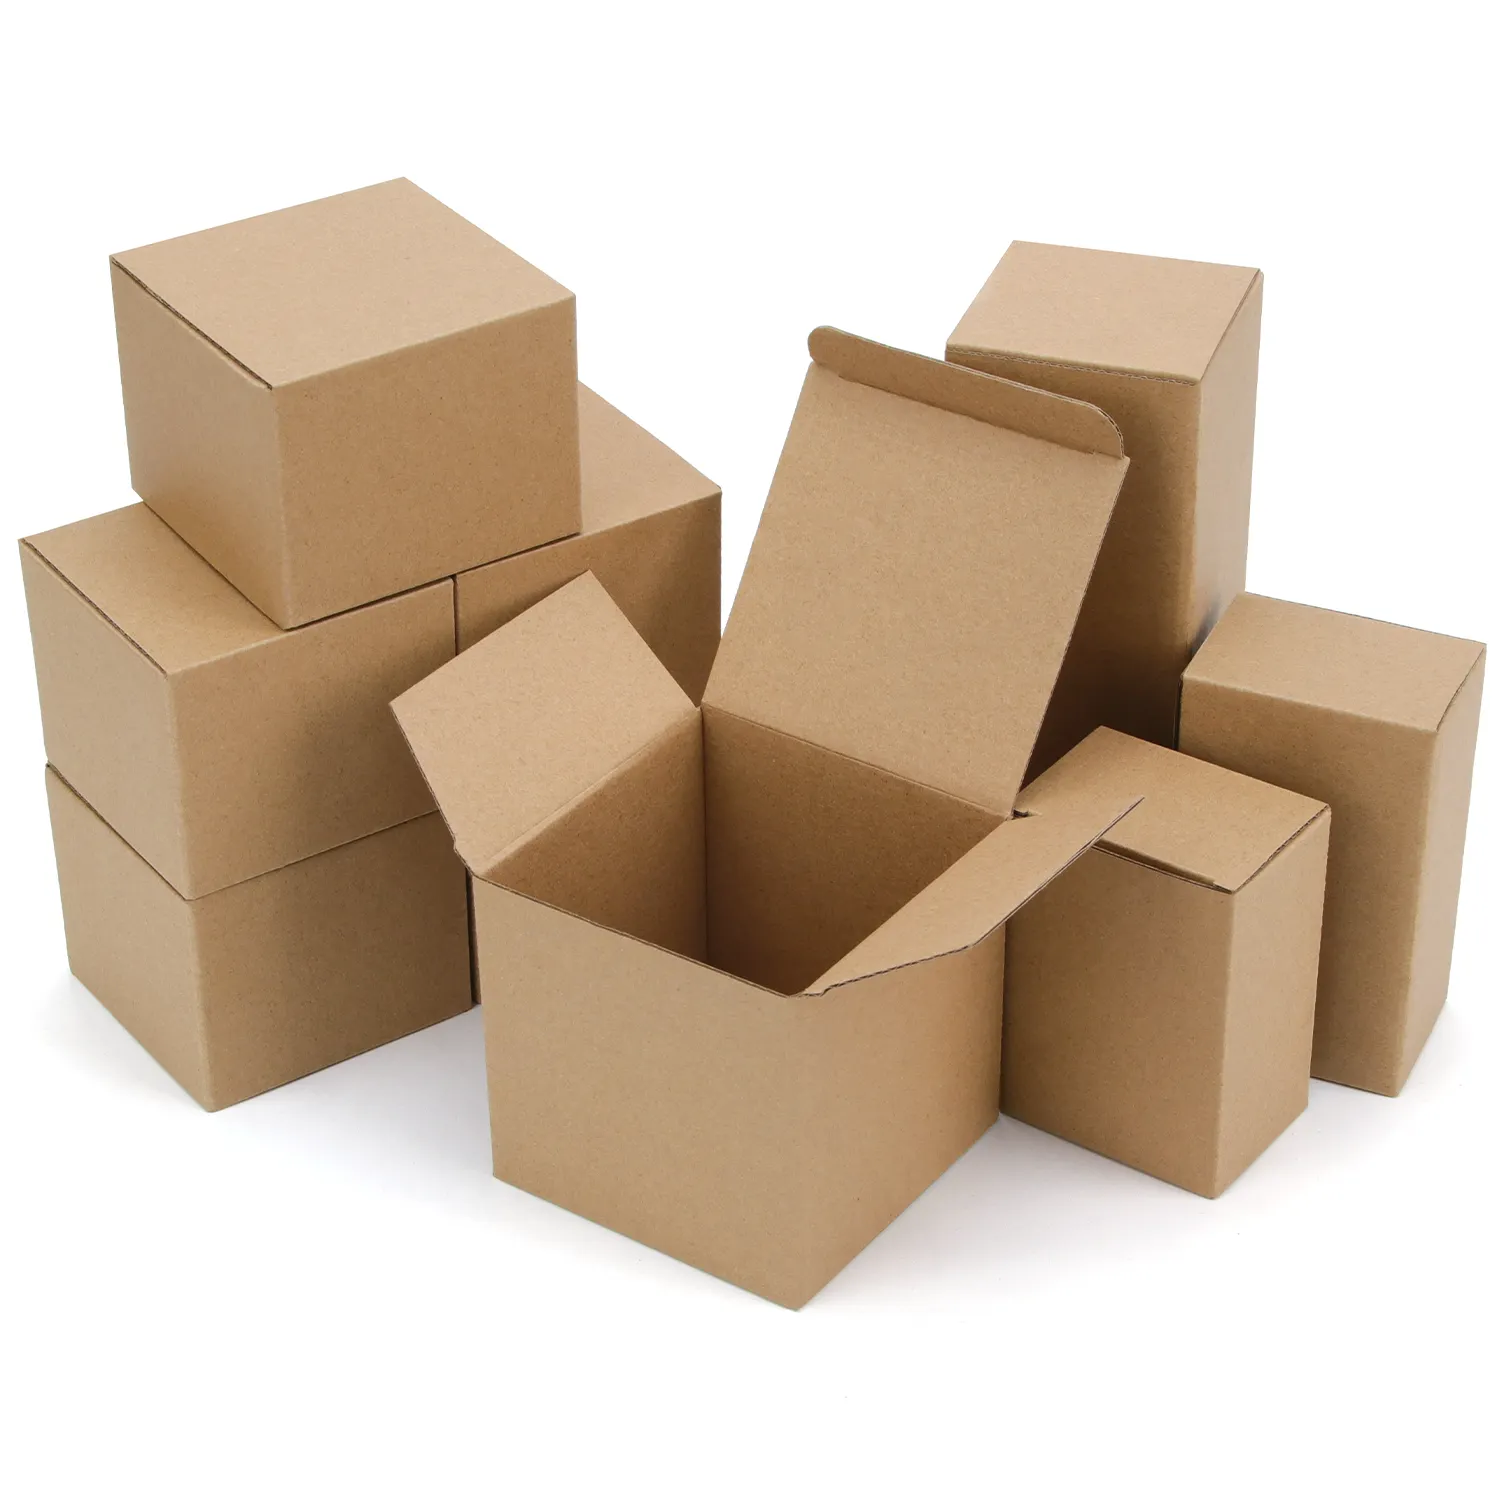 उपहार बक्से 4x4x4 ब्राउन क्राफ्ट पेपर उपहार बक्से छोटे कागज कुकी उपहार घन बक्से